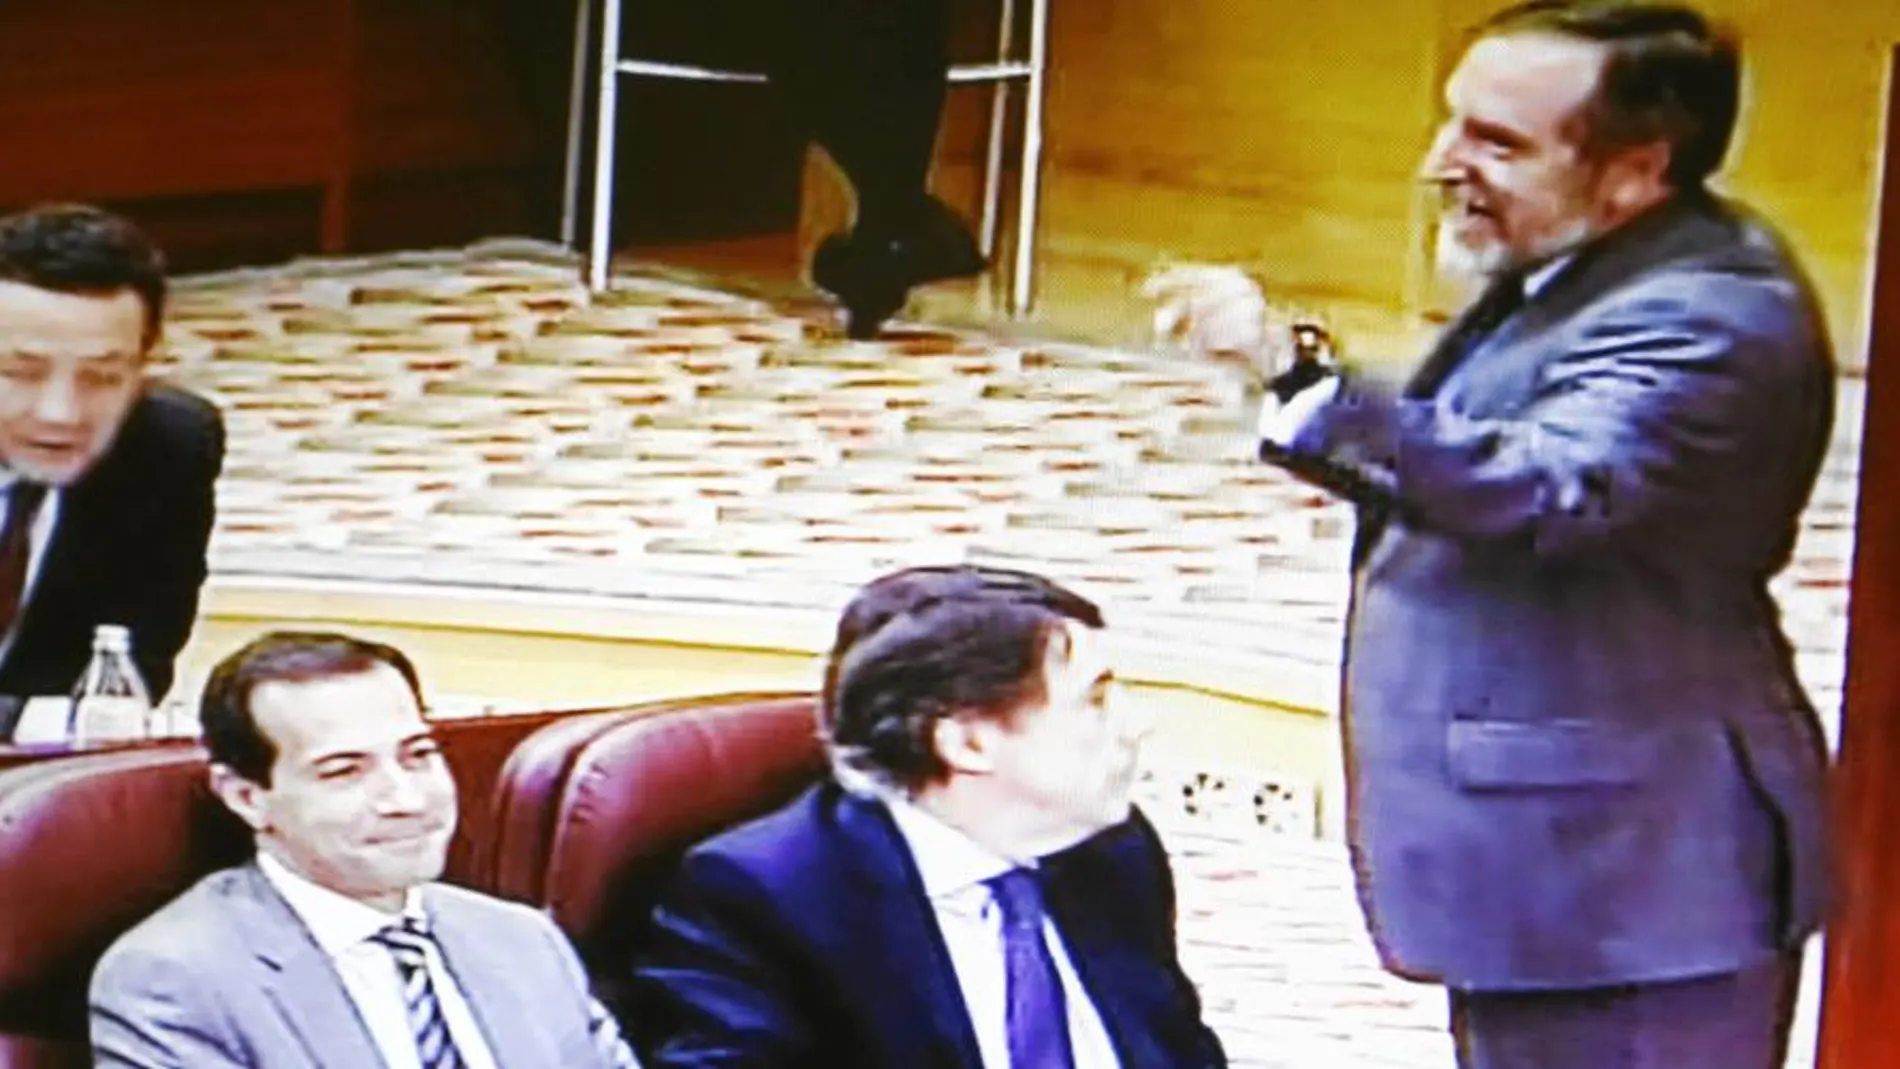 El pasado jueves, durante el último pleno en la Asamblea, Barranco se levantó de su escaño para decir al consejero de Justicia «¡Estoy harto de fachas como tú!»